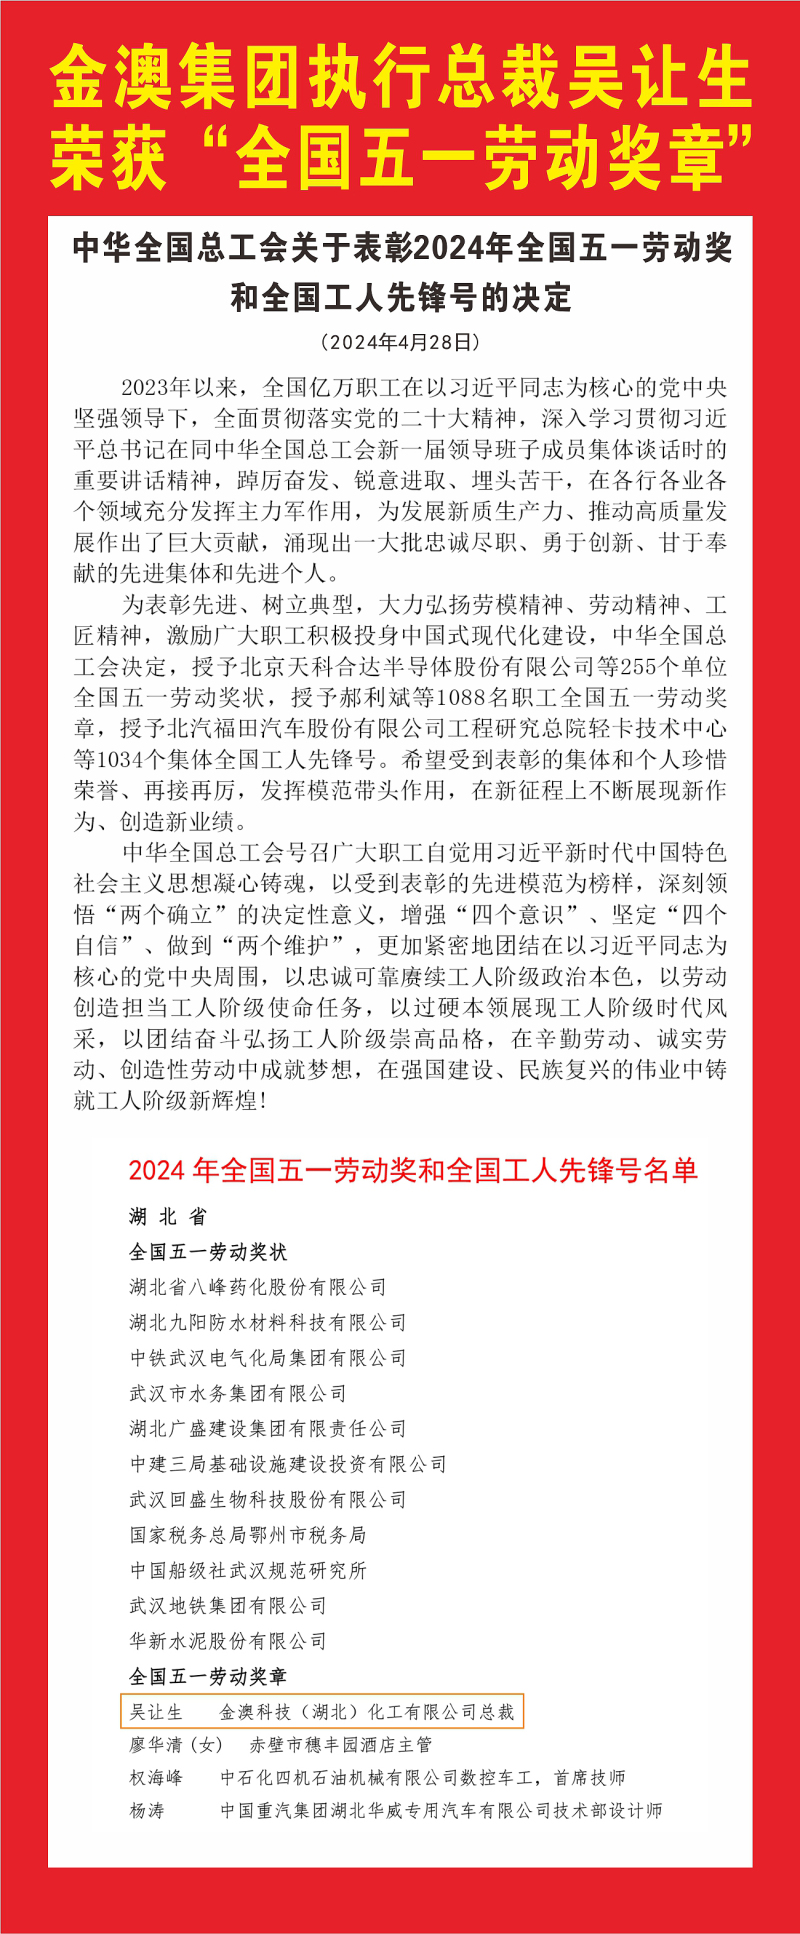 银河国际集团执行总裁吴让生荣获“全国五一劳动奖章”